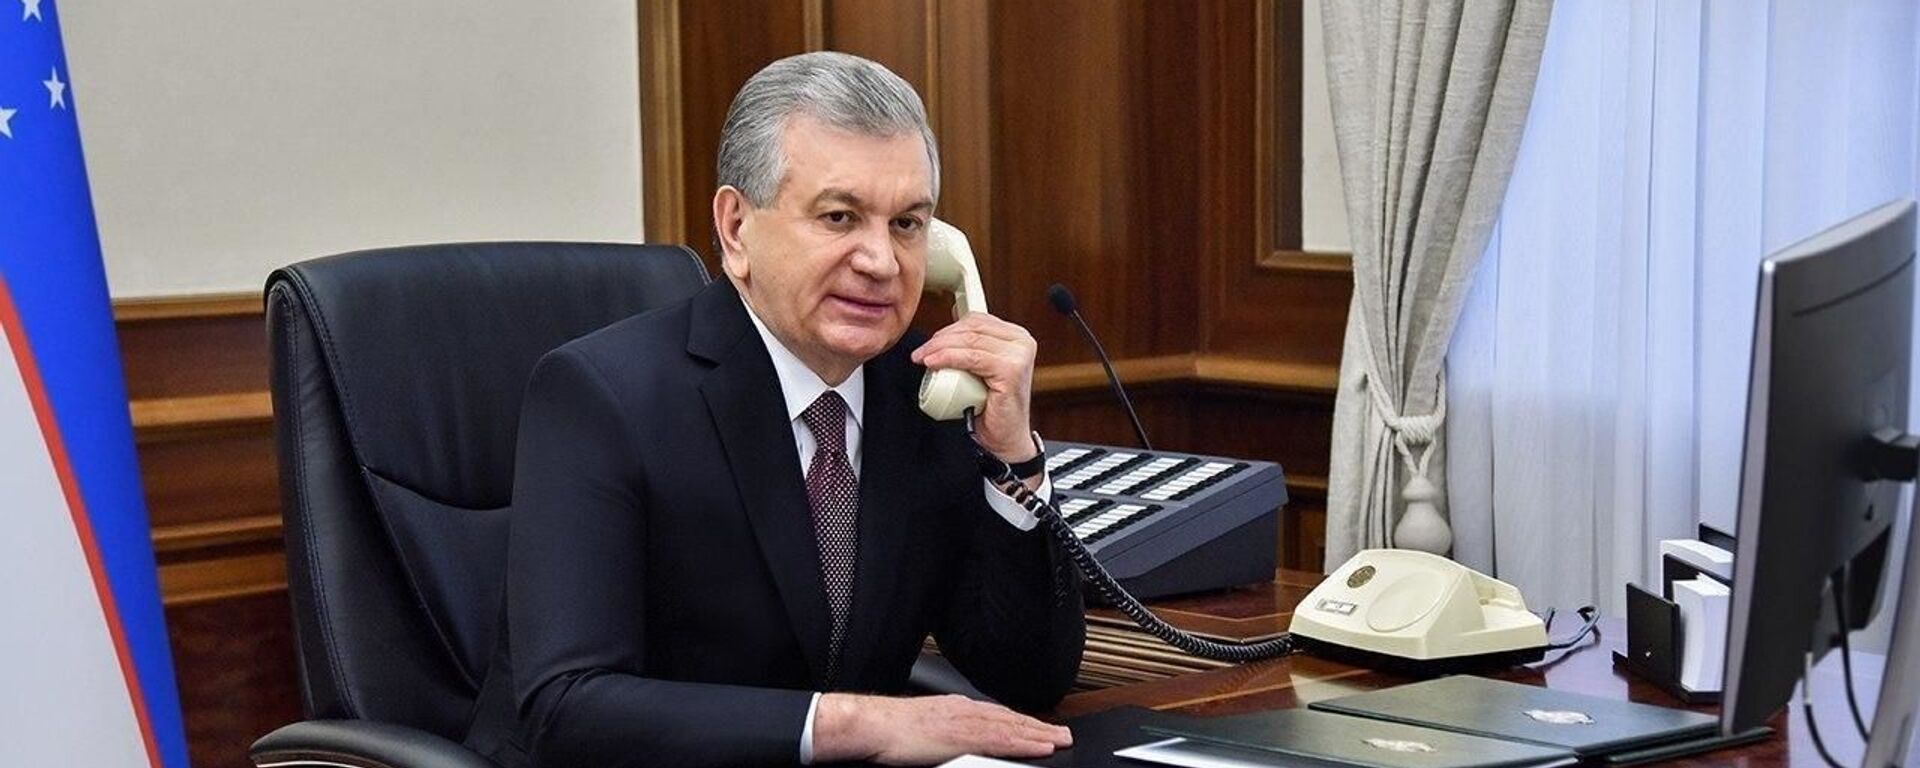 Президент Шавкат Мирзиёев разговаривает по телефону - Sputnik Узбекистан, 1920, 28.08.2021